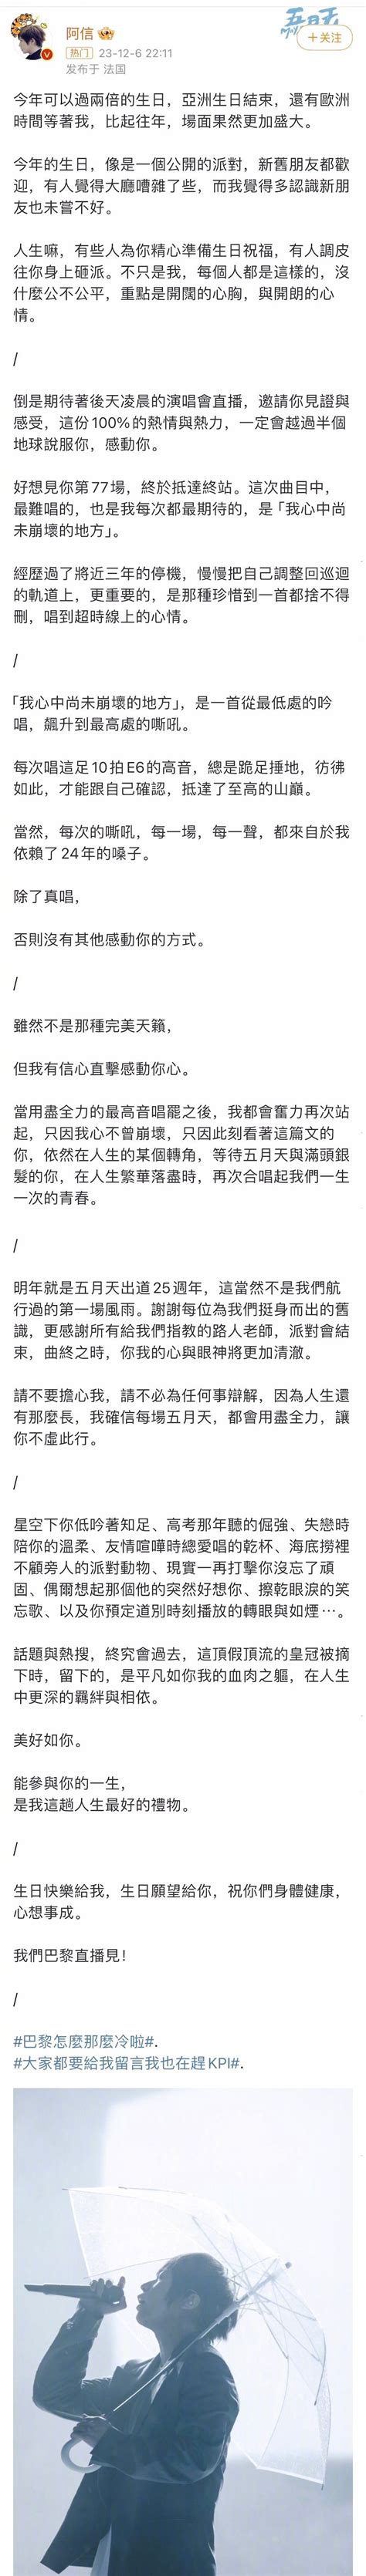 五月天阿信发文回应否认假唱 “缺席就是认输了”_腾讯新闻